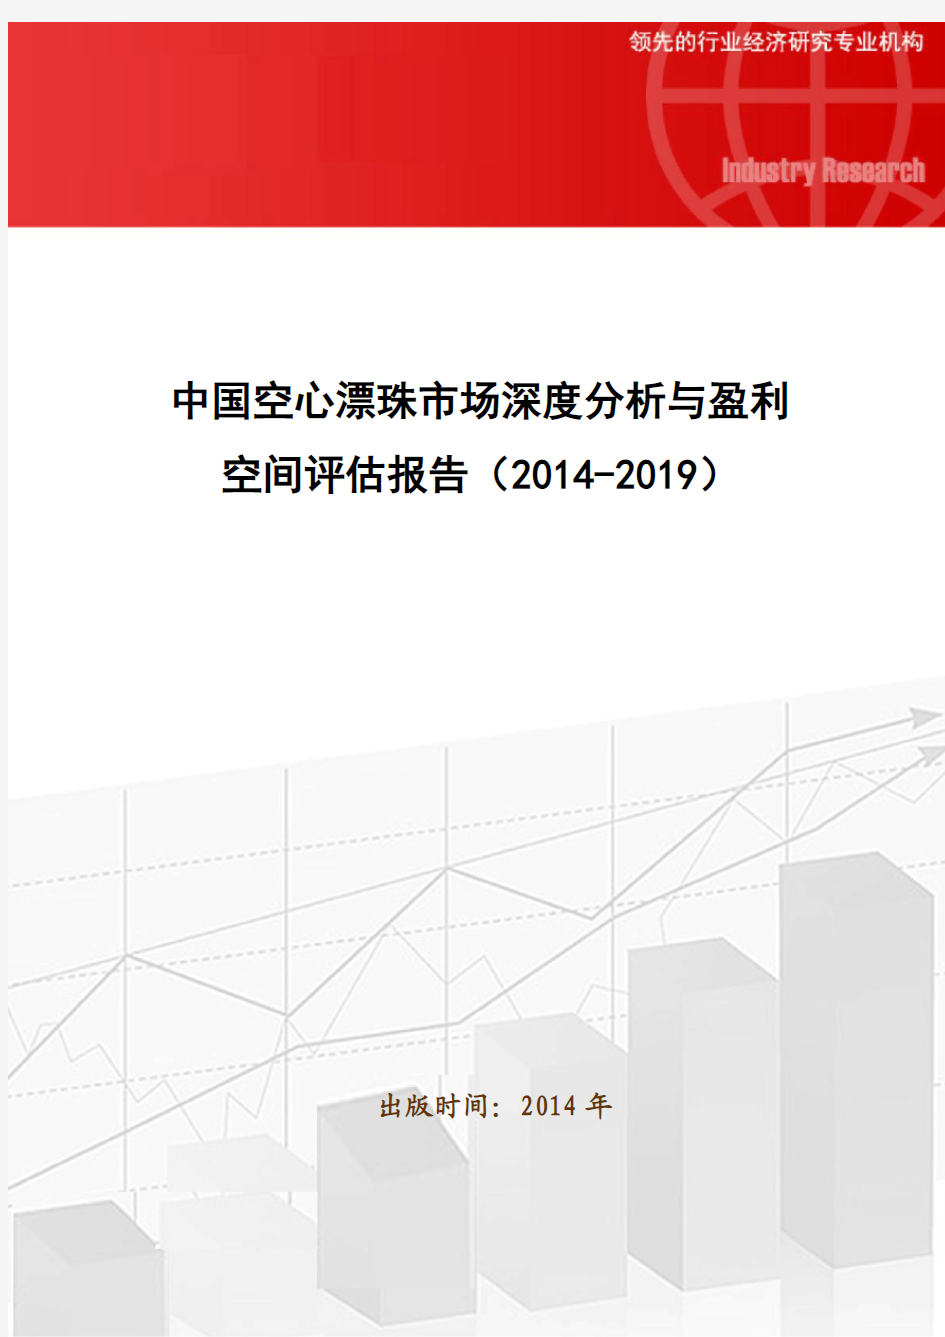 中国空心漂珠市场深度分析与盈利空间评估报告(2014-2019)